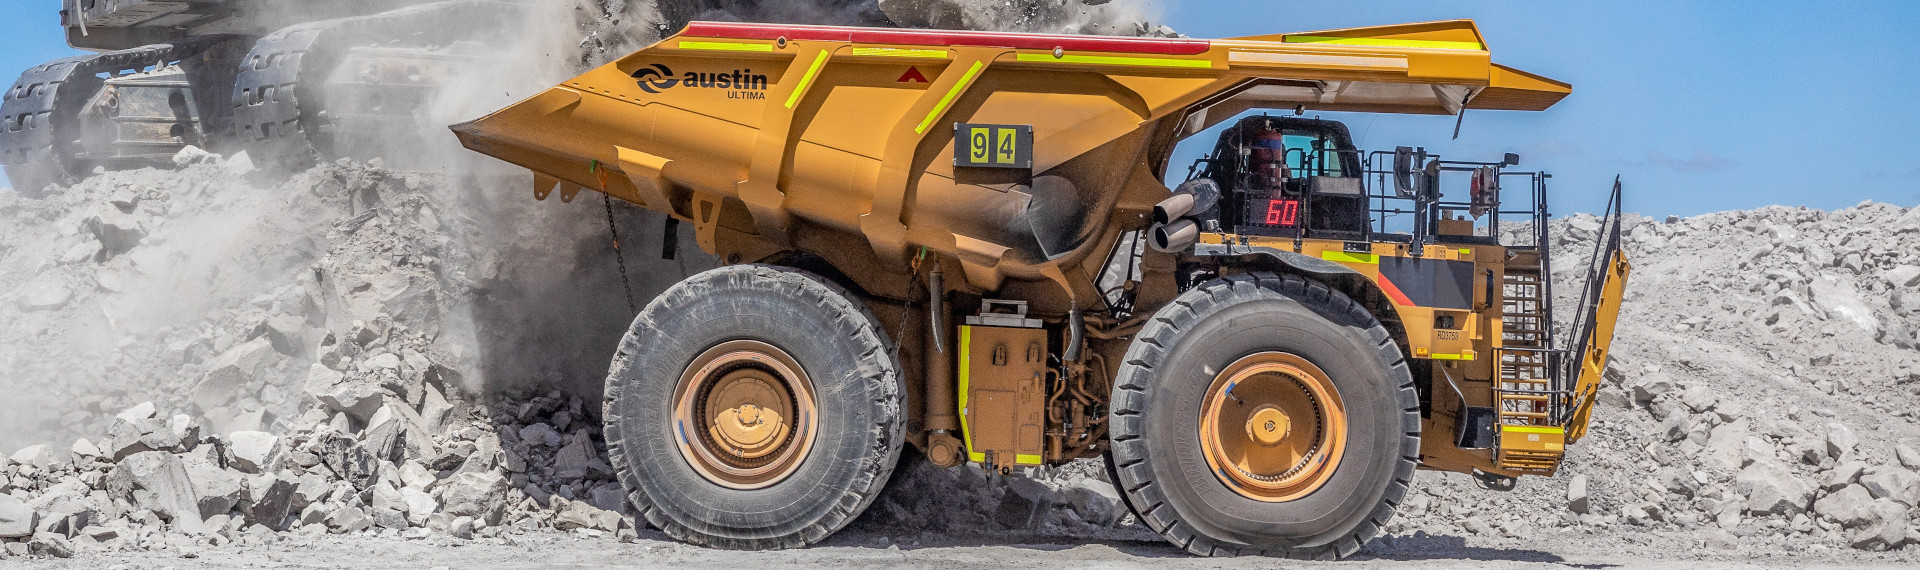 Velké těžební vozy společnosti Austin mají o 25 % nižší hmotnost díky oceli Hardox 500 Tuf